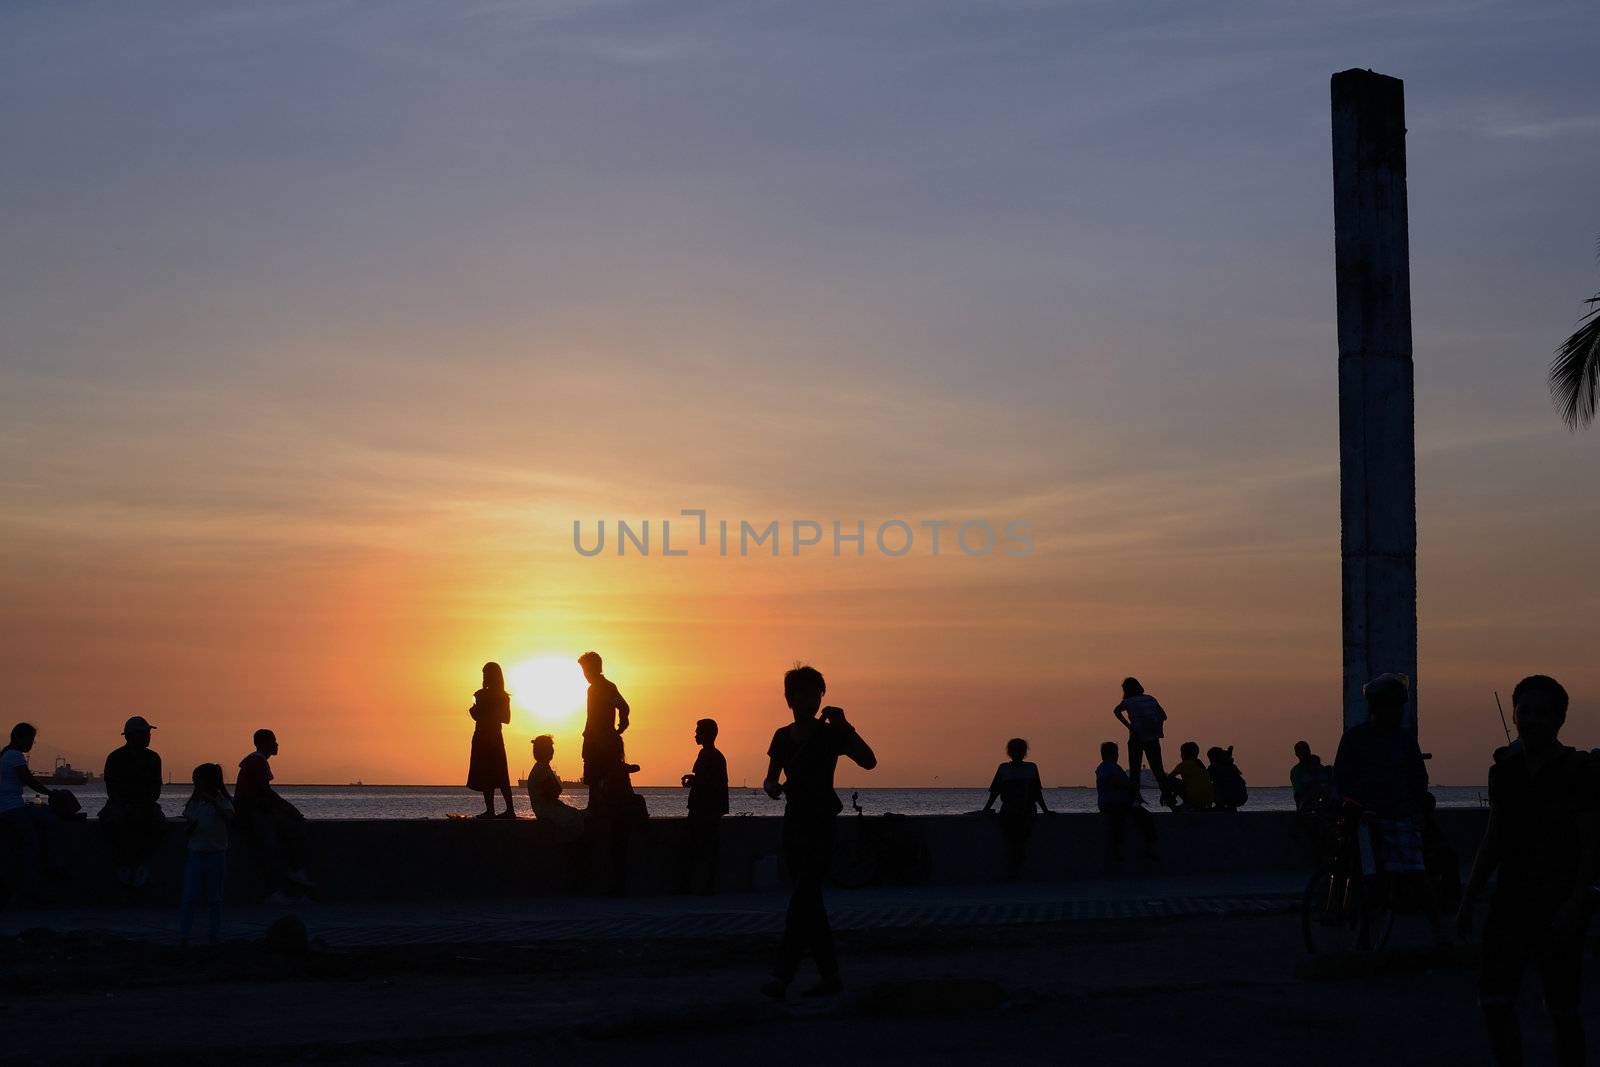 People enjoying a beautiful sunset at manila bay.